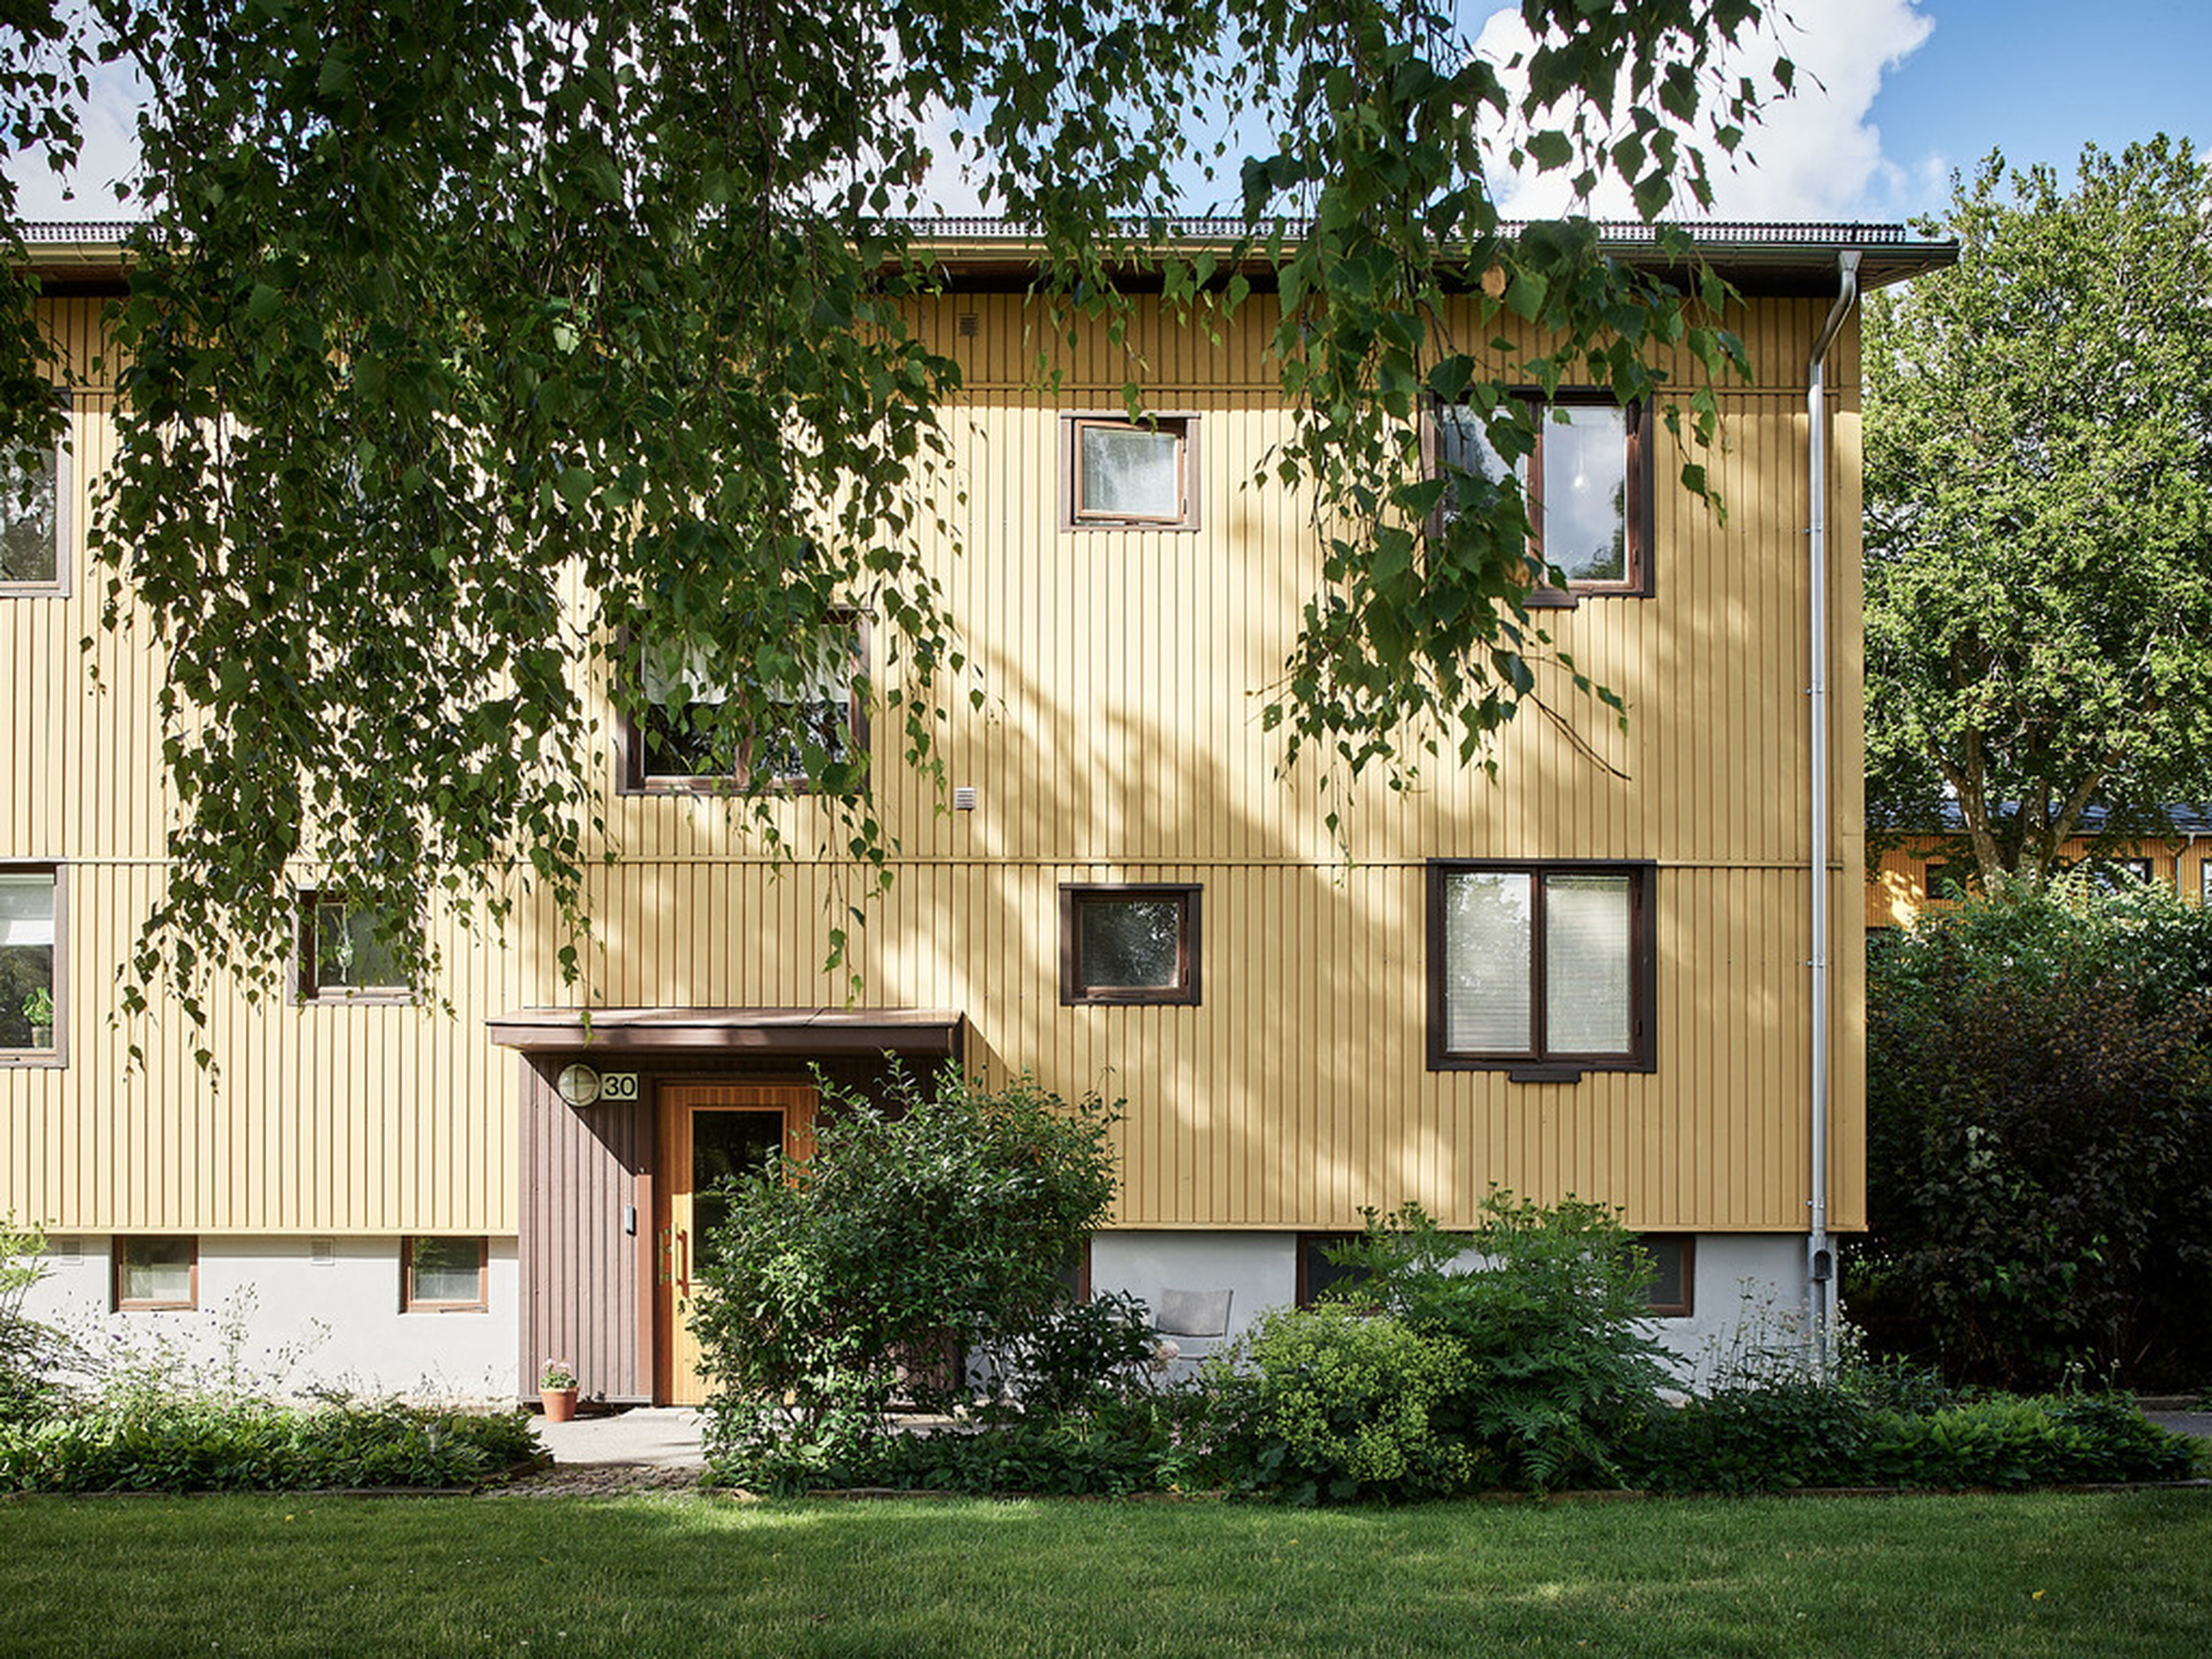 Bostadsrättsföreningen Skytteskogens hus ritades av arkitekterna S. Wallander och N. Lindberg 1942.